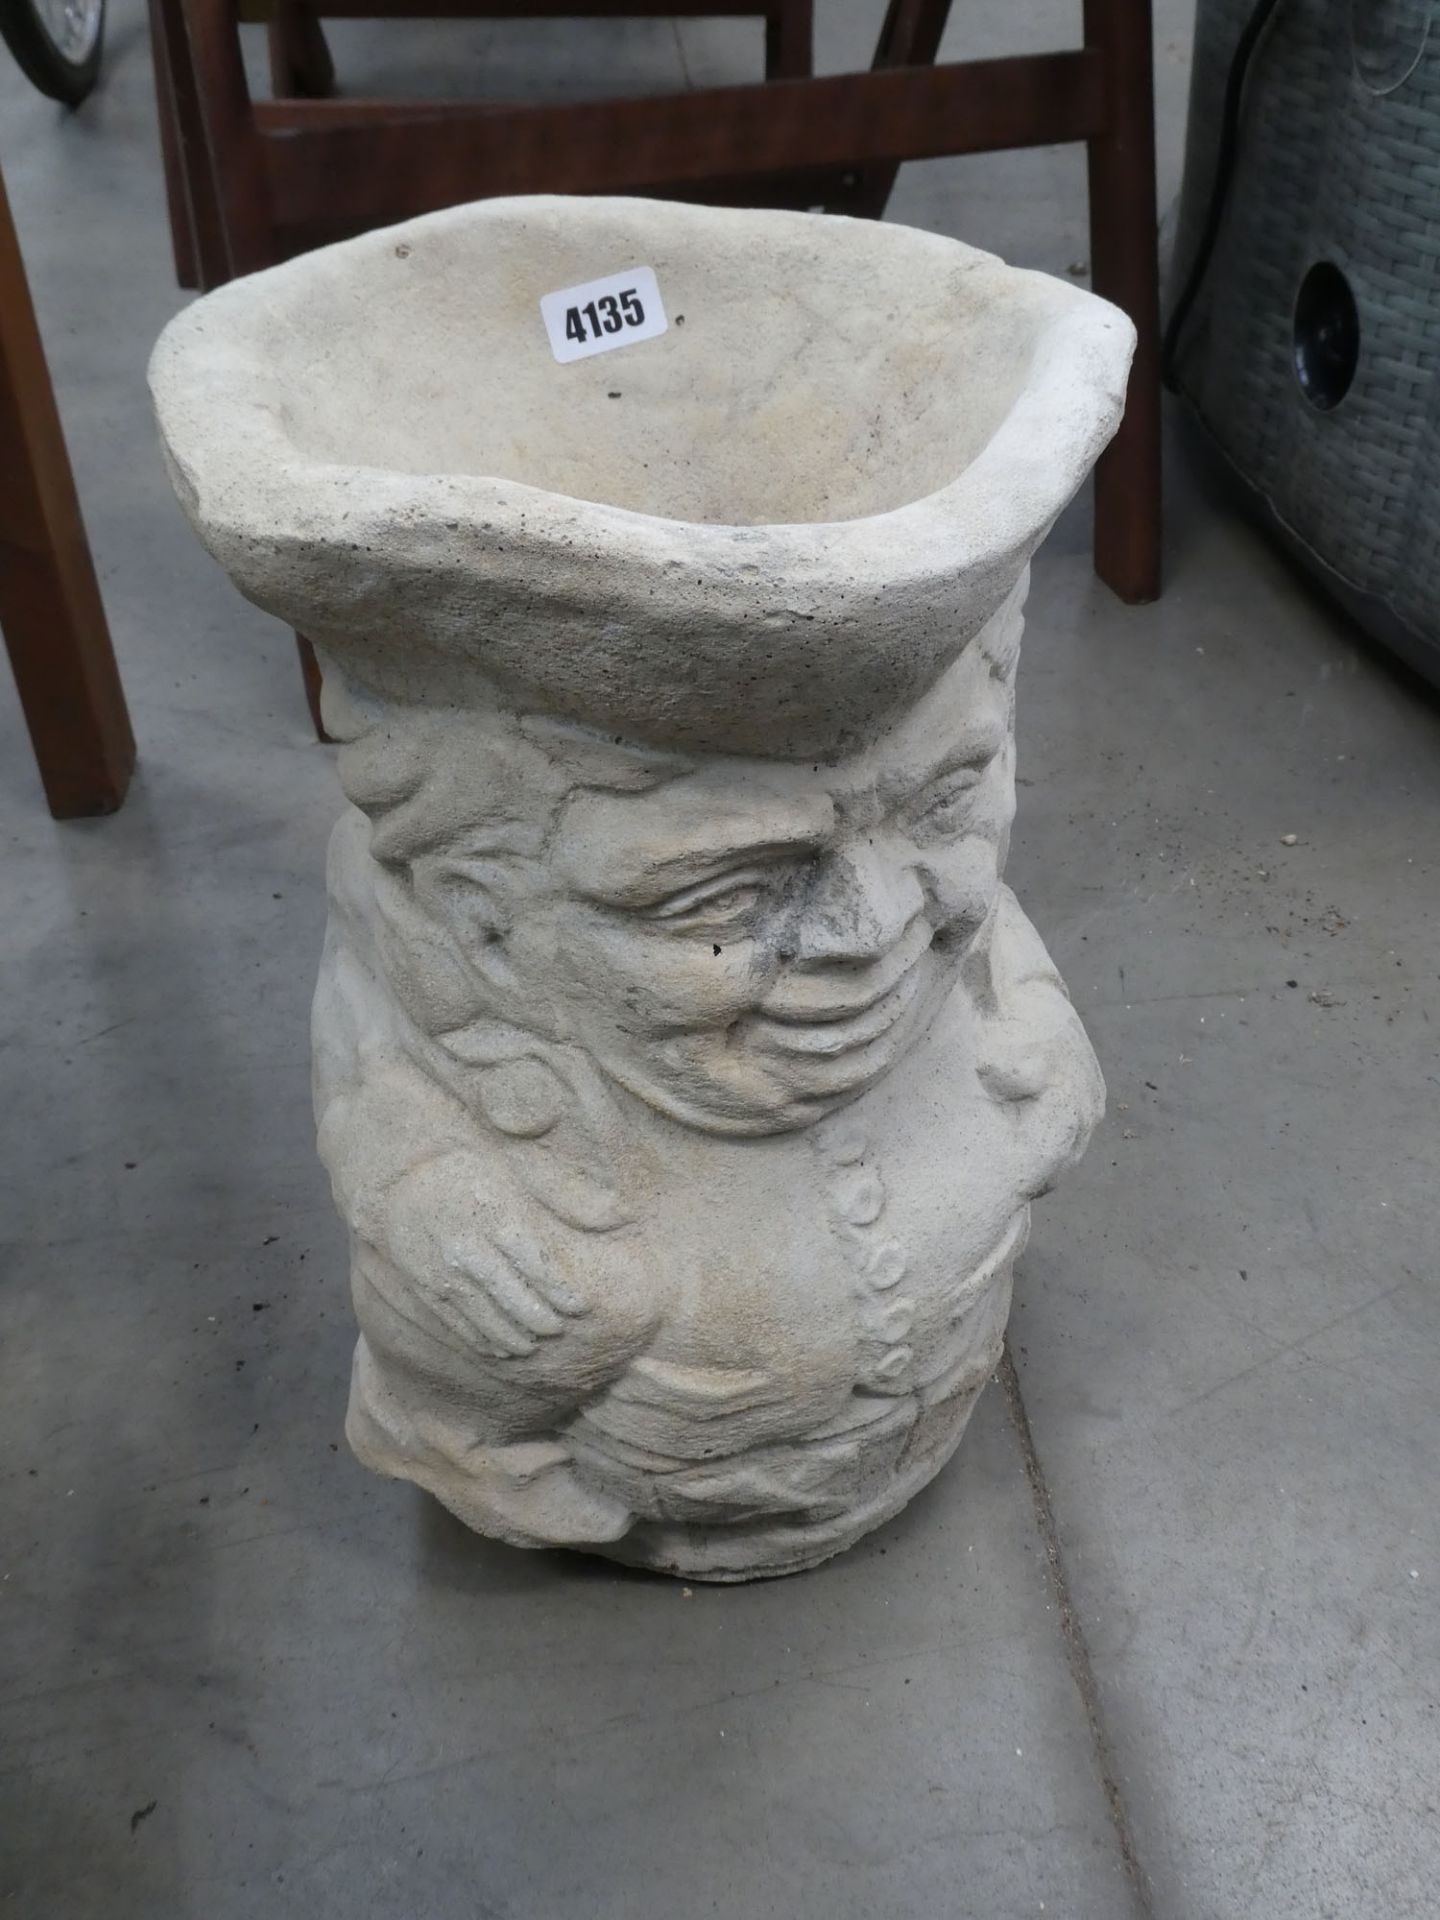 Toby jug style concrete pot